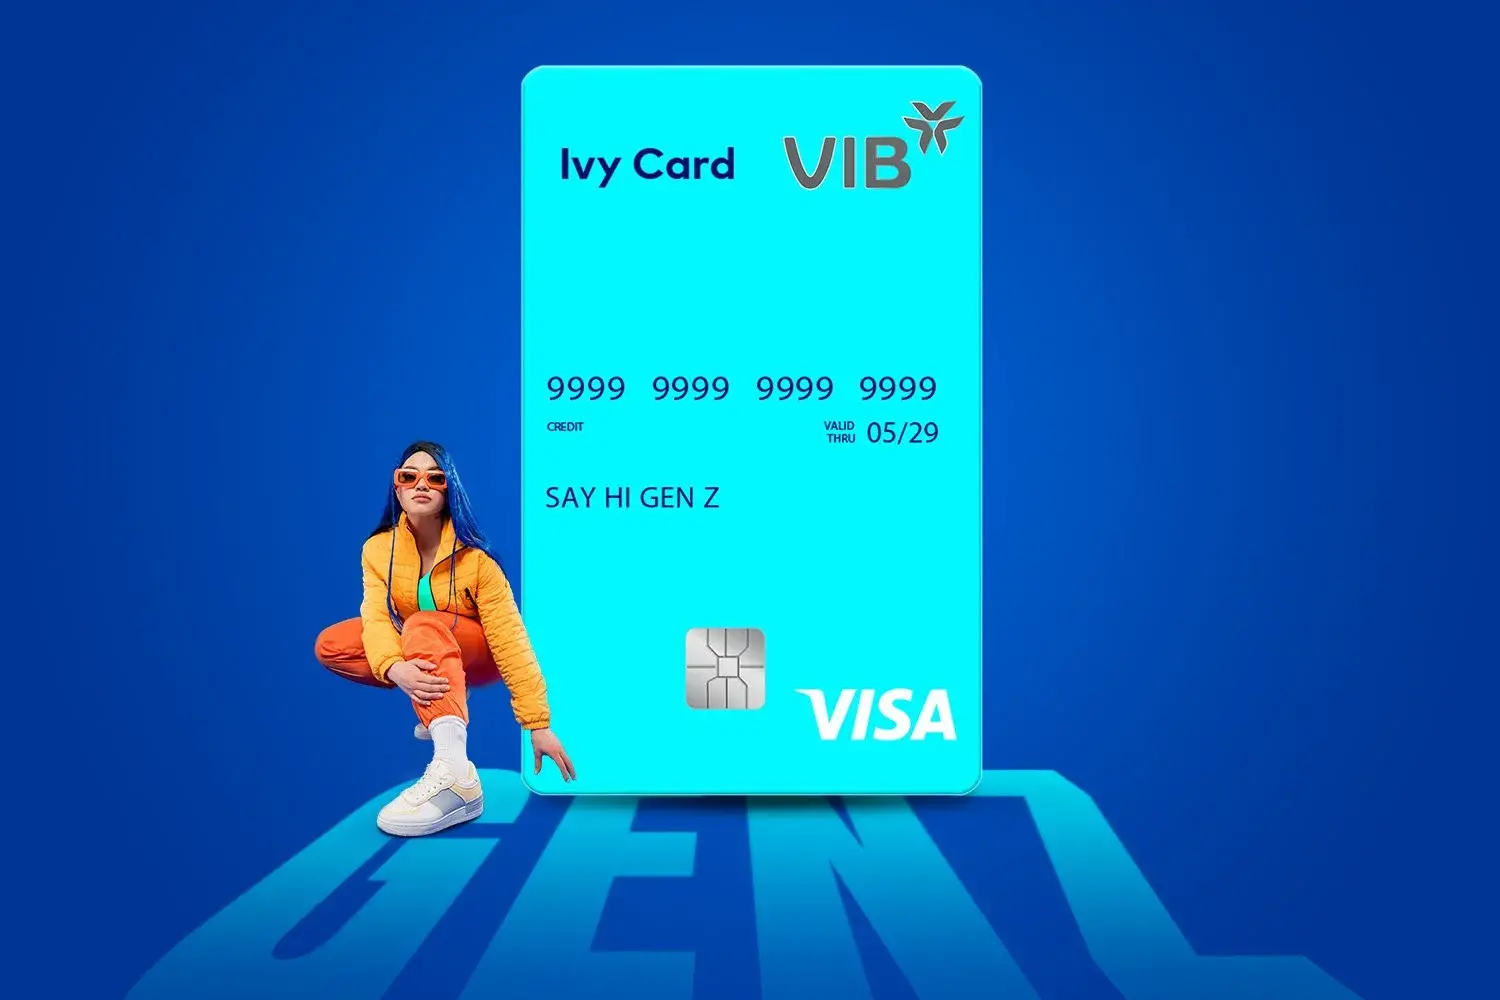  Thẻ Ivy Card mang đến nhiều ưu đãi hấp dẫn